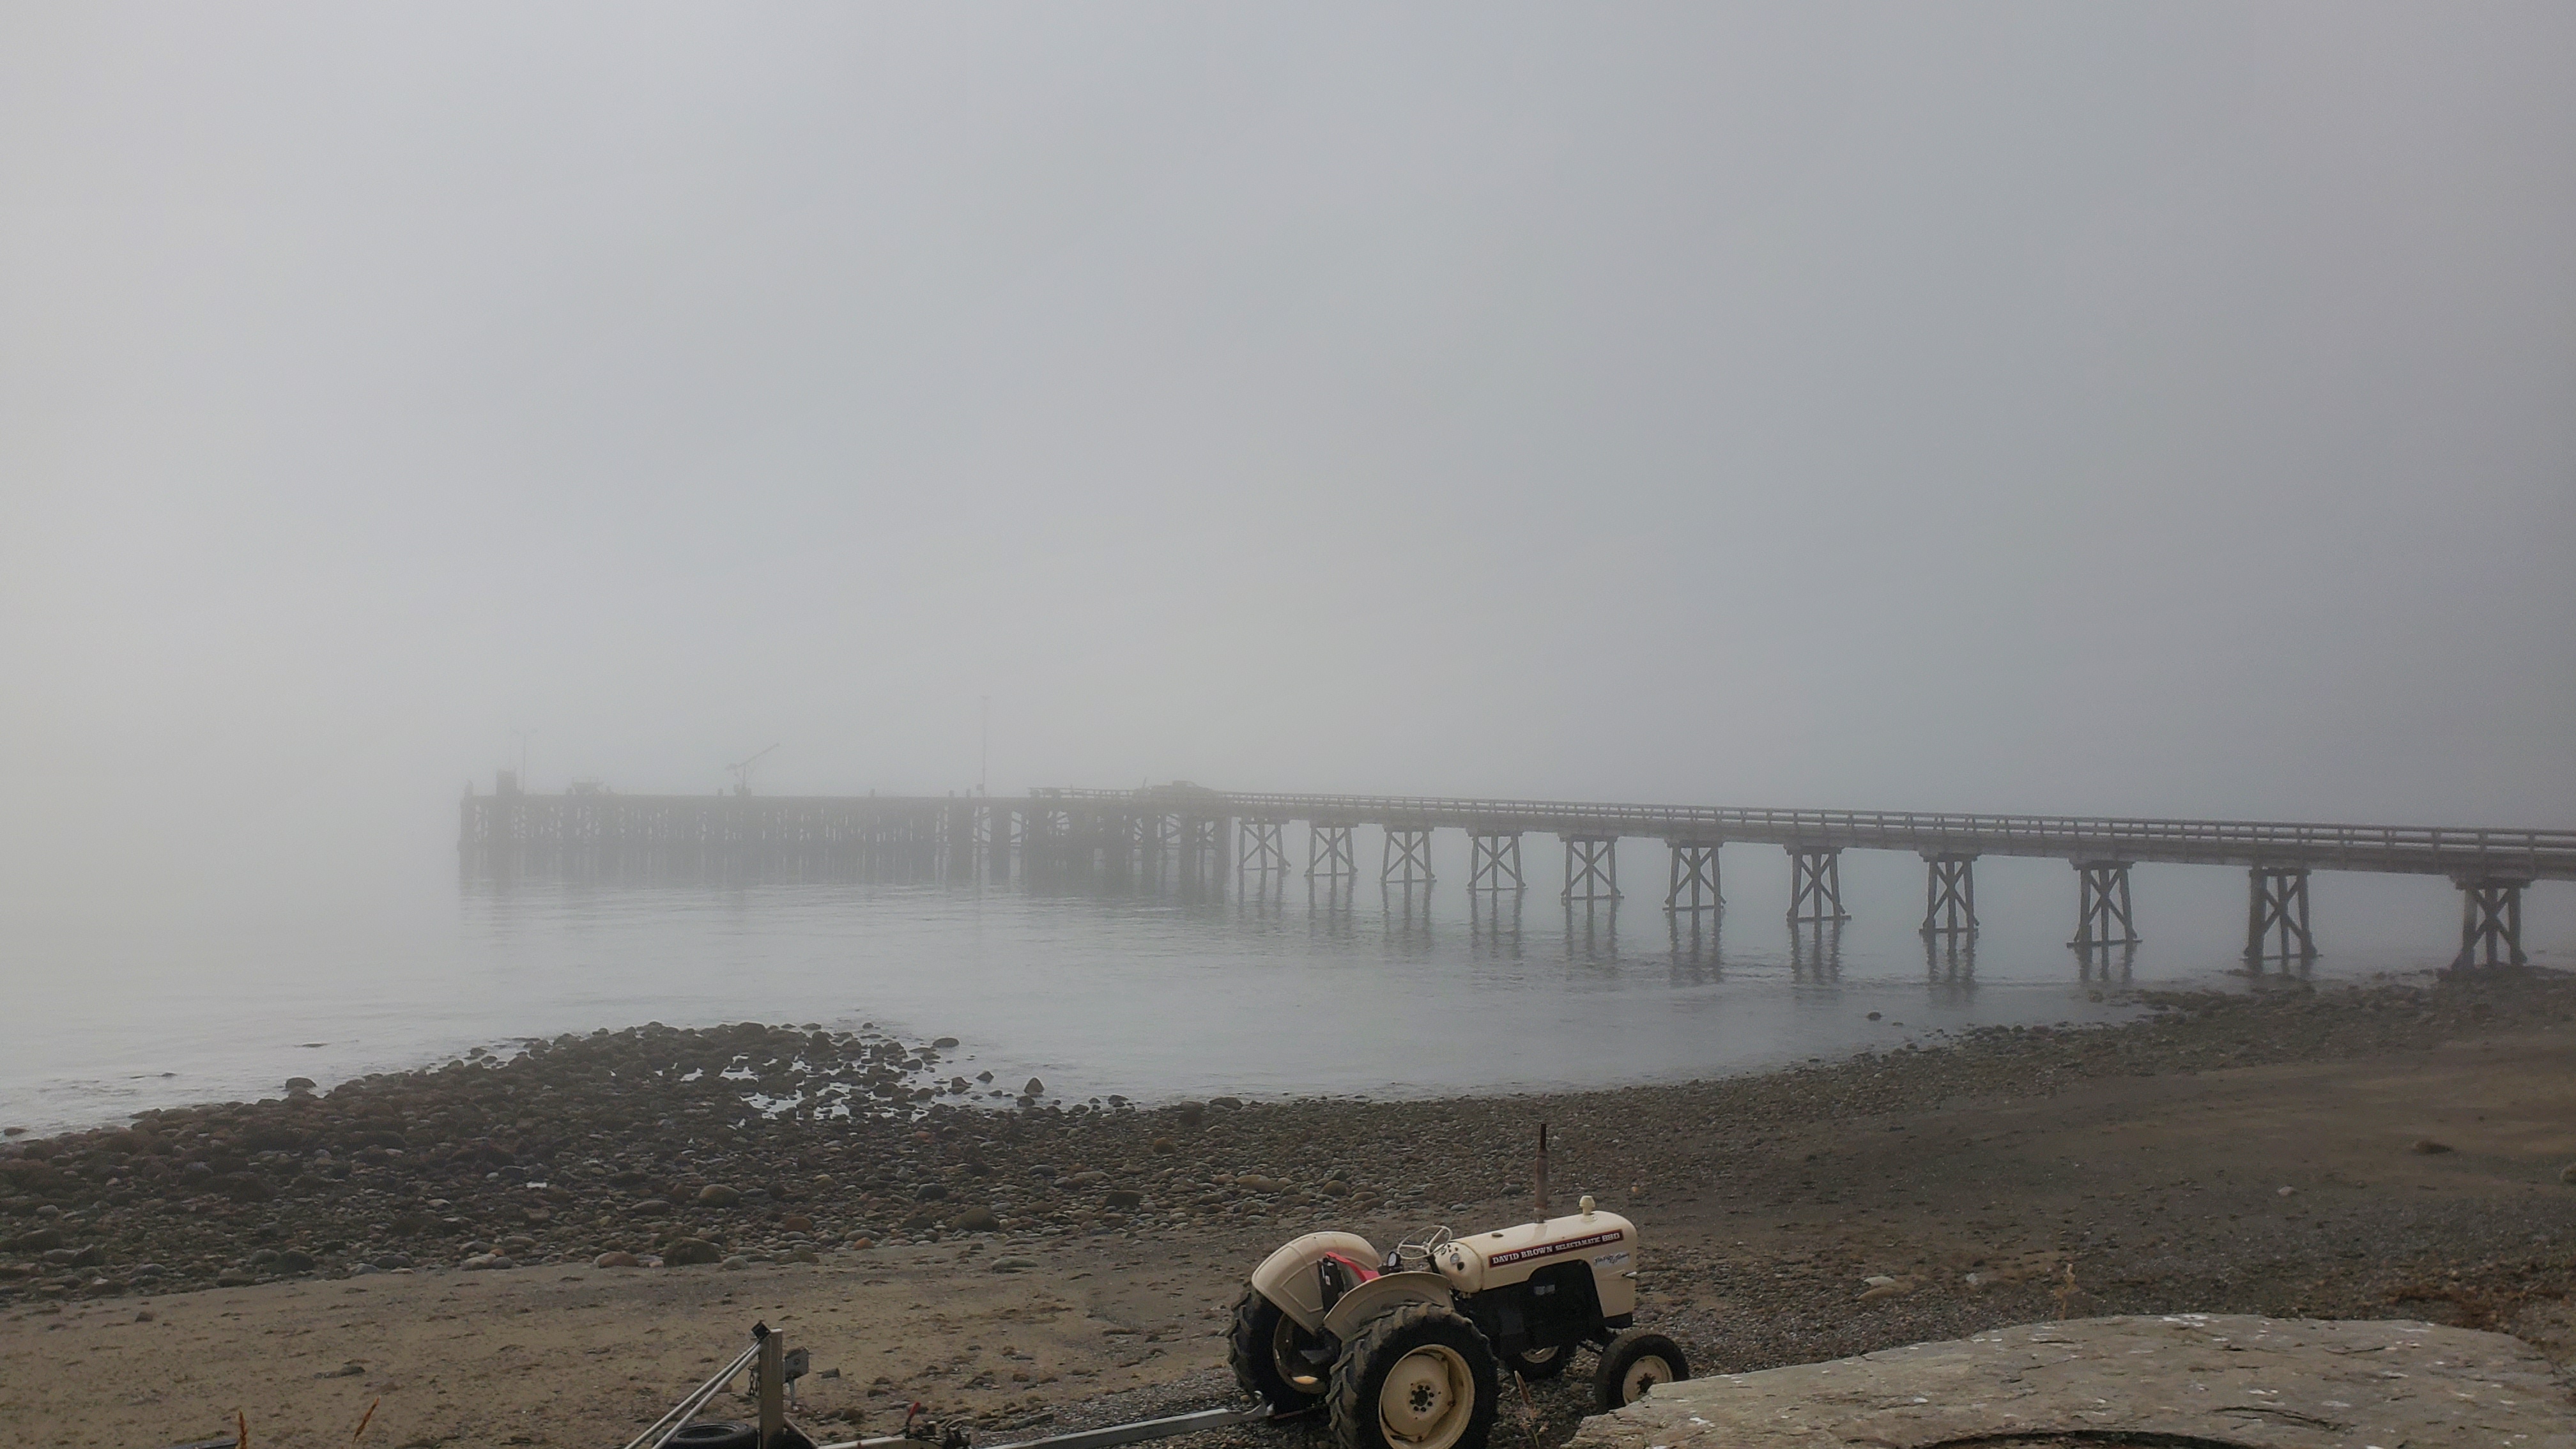 Jackson Bay wharf in fog